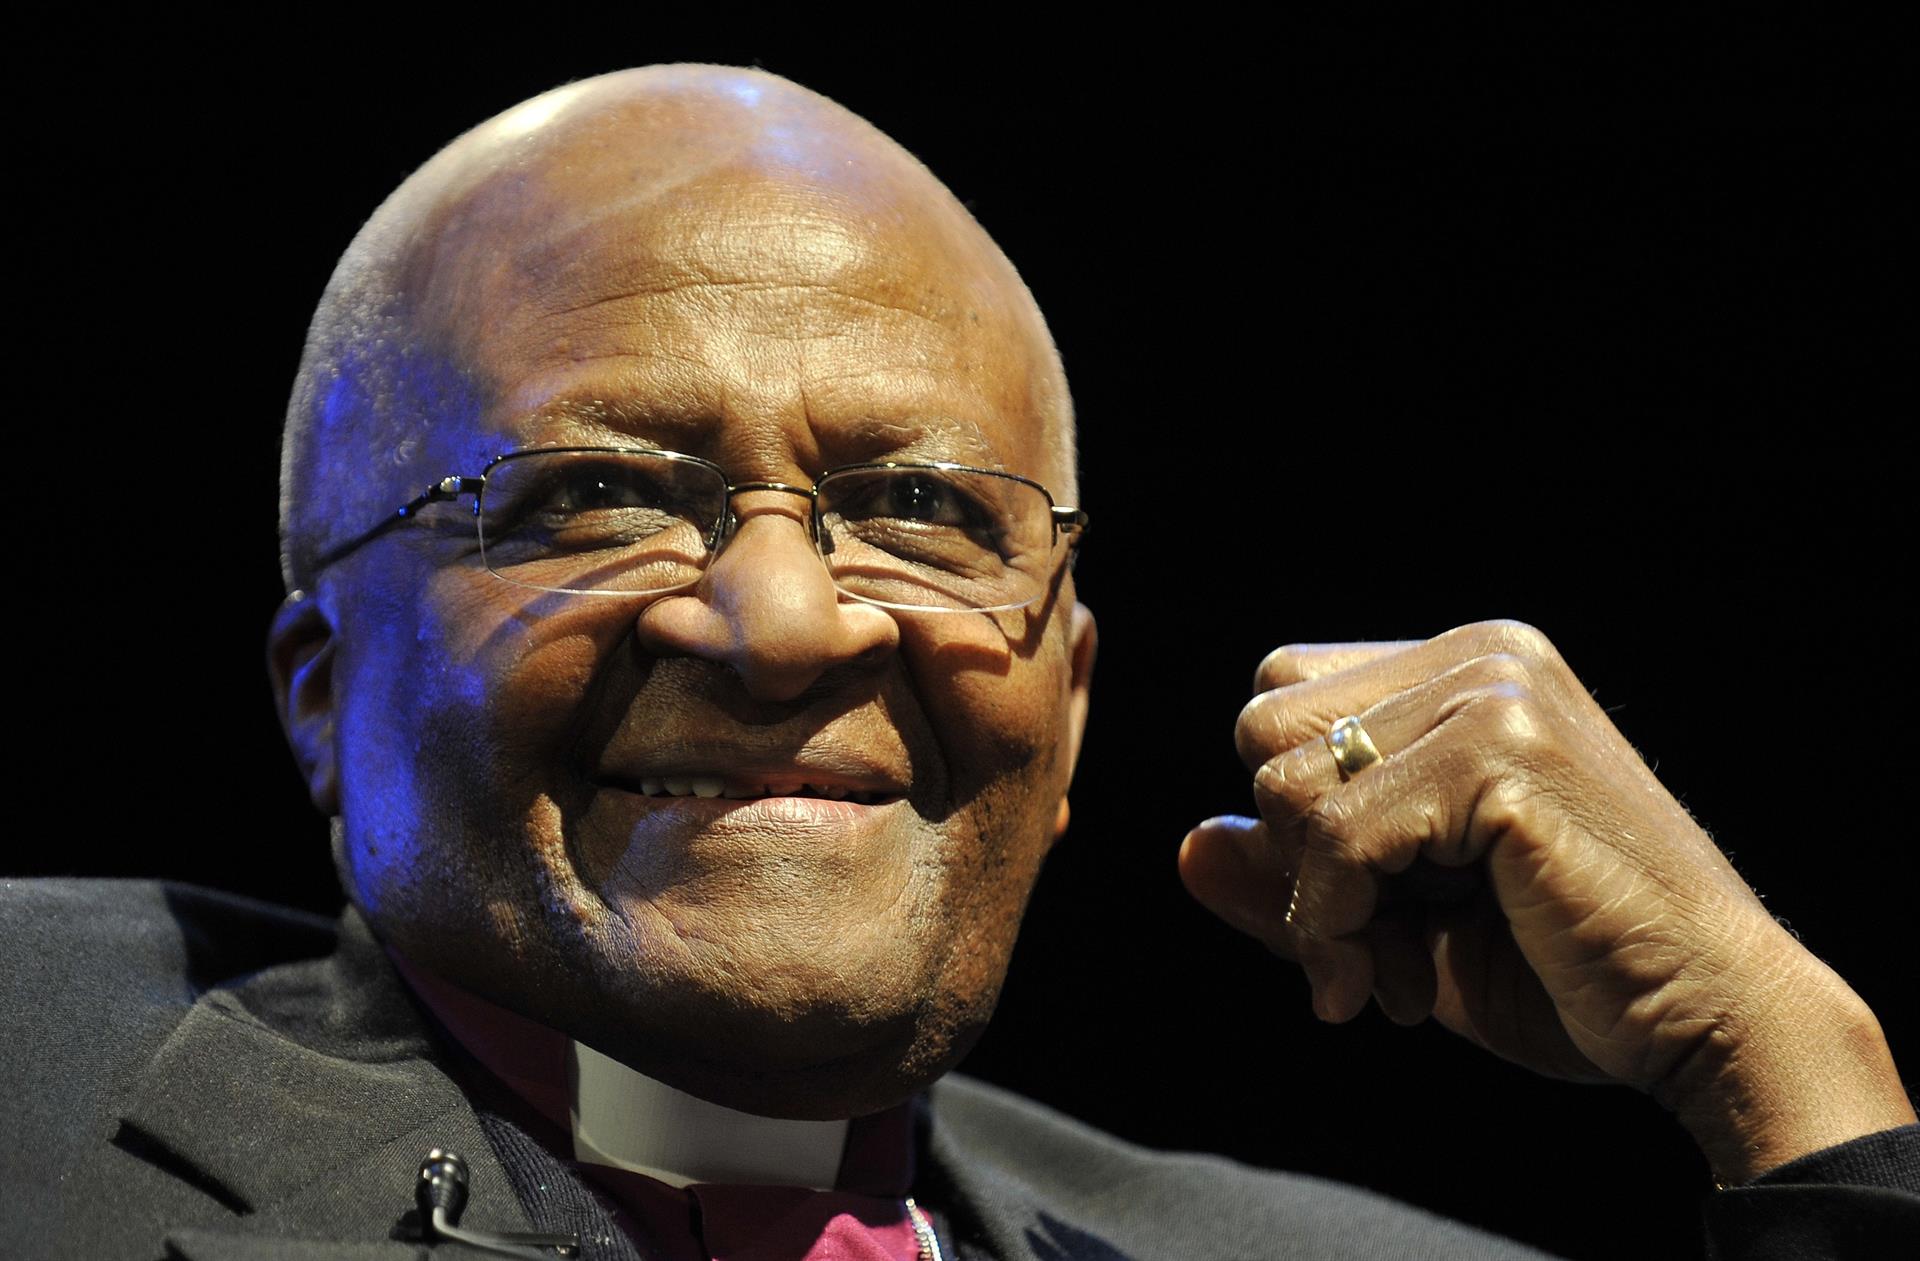 El Nobel de la Paz Desmond Tutu muere a los 90 años